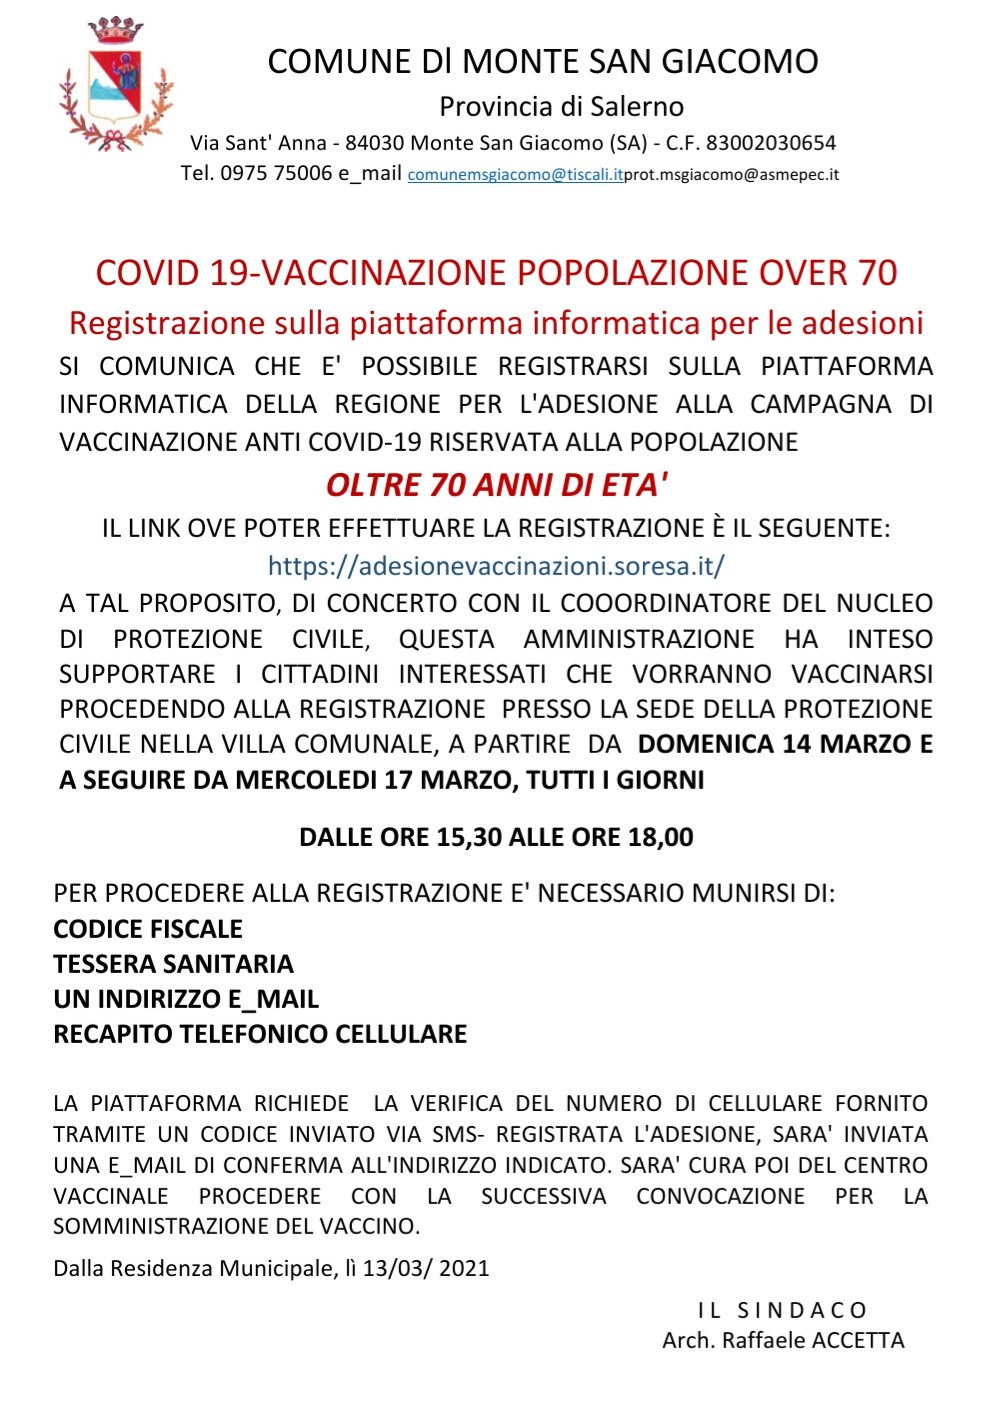 Campagna vaccinazione anticovid popolazione oltre i 70 anni